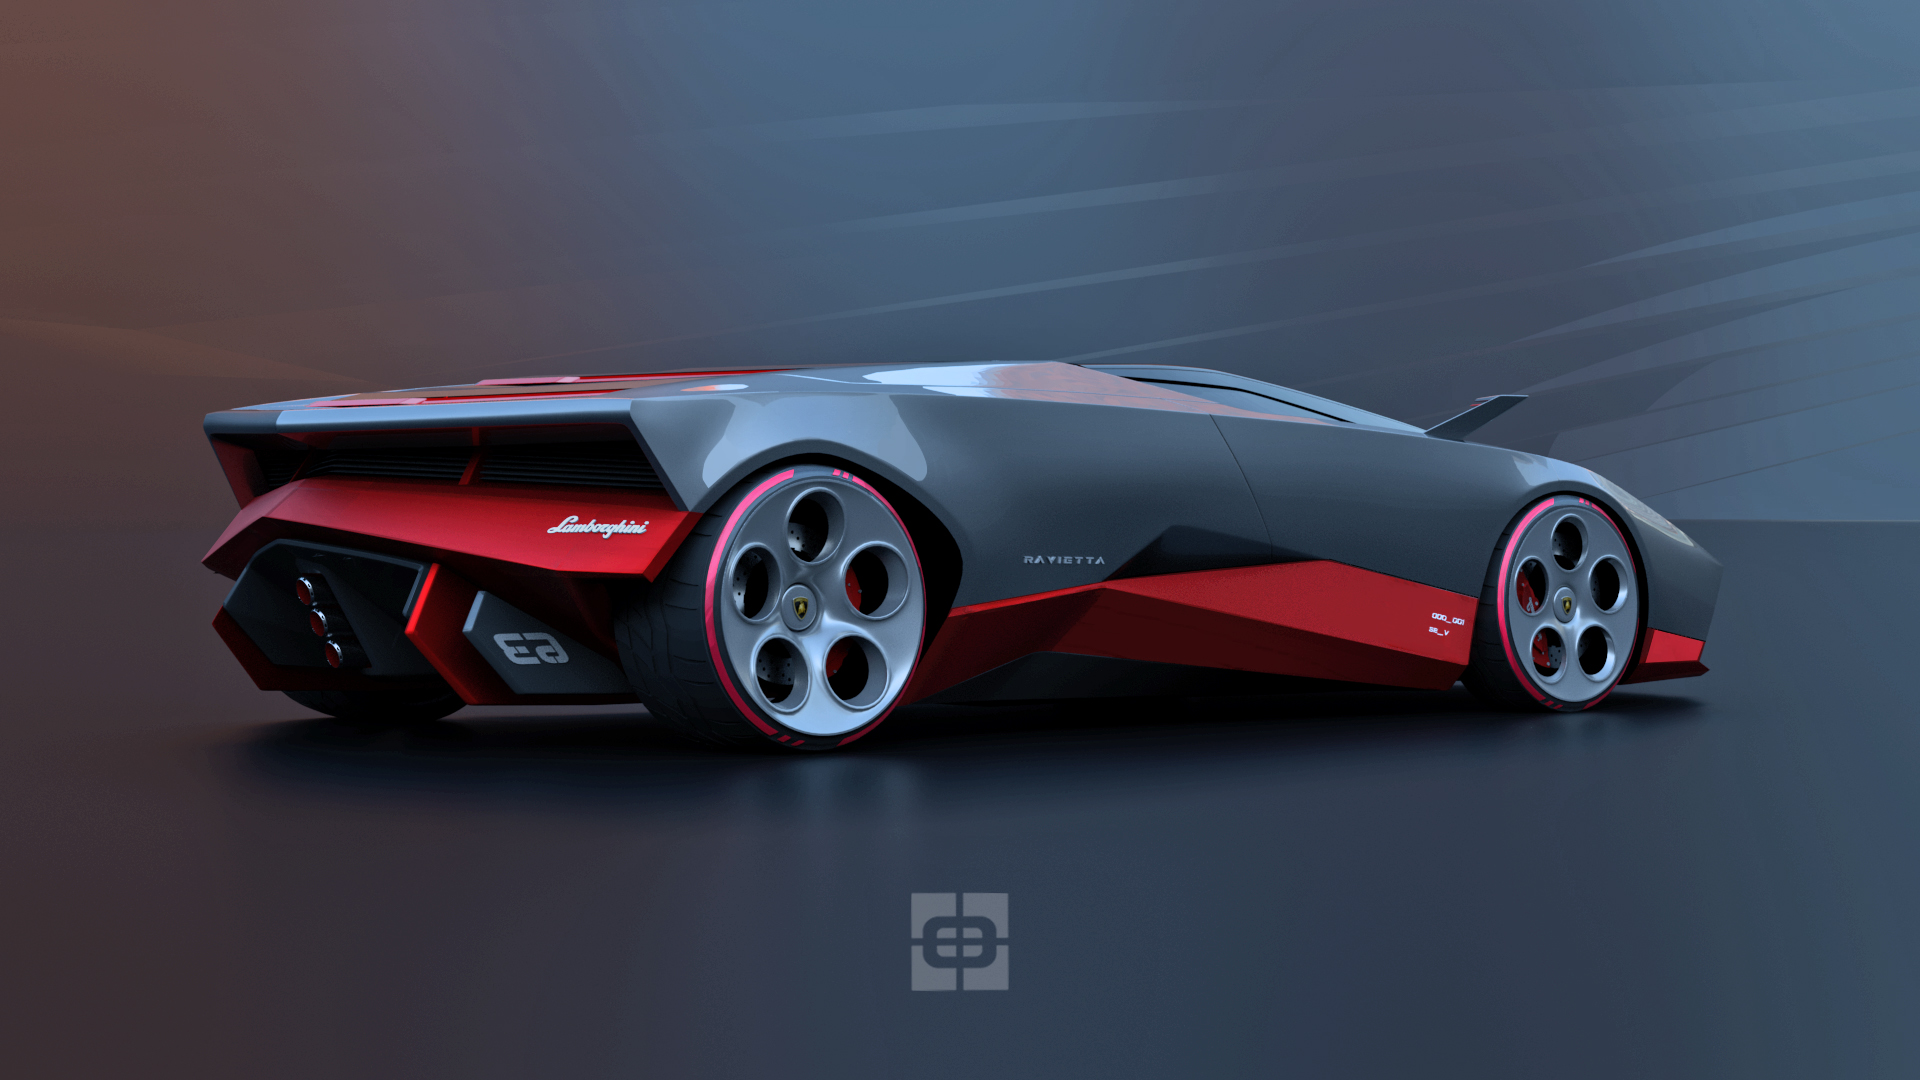 Професионален илустратор замислил како би можеле да изгледаат идните суперавтомобили Lamborghini